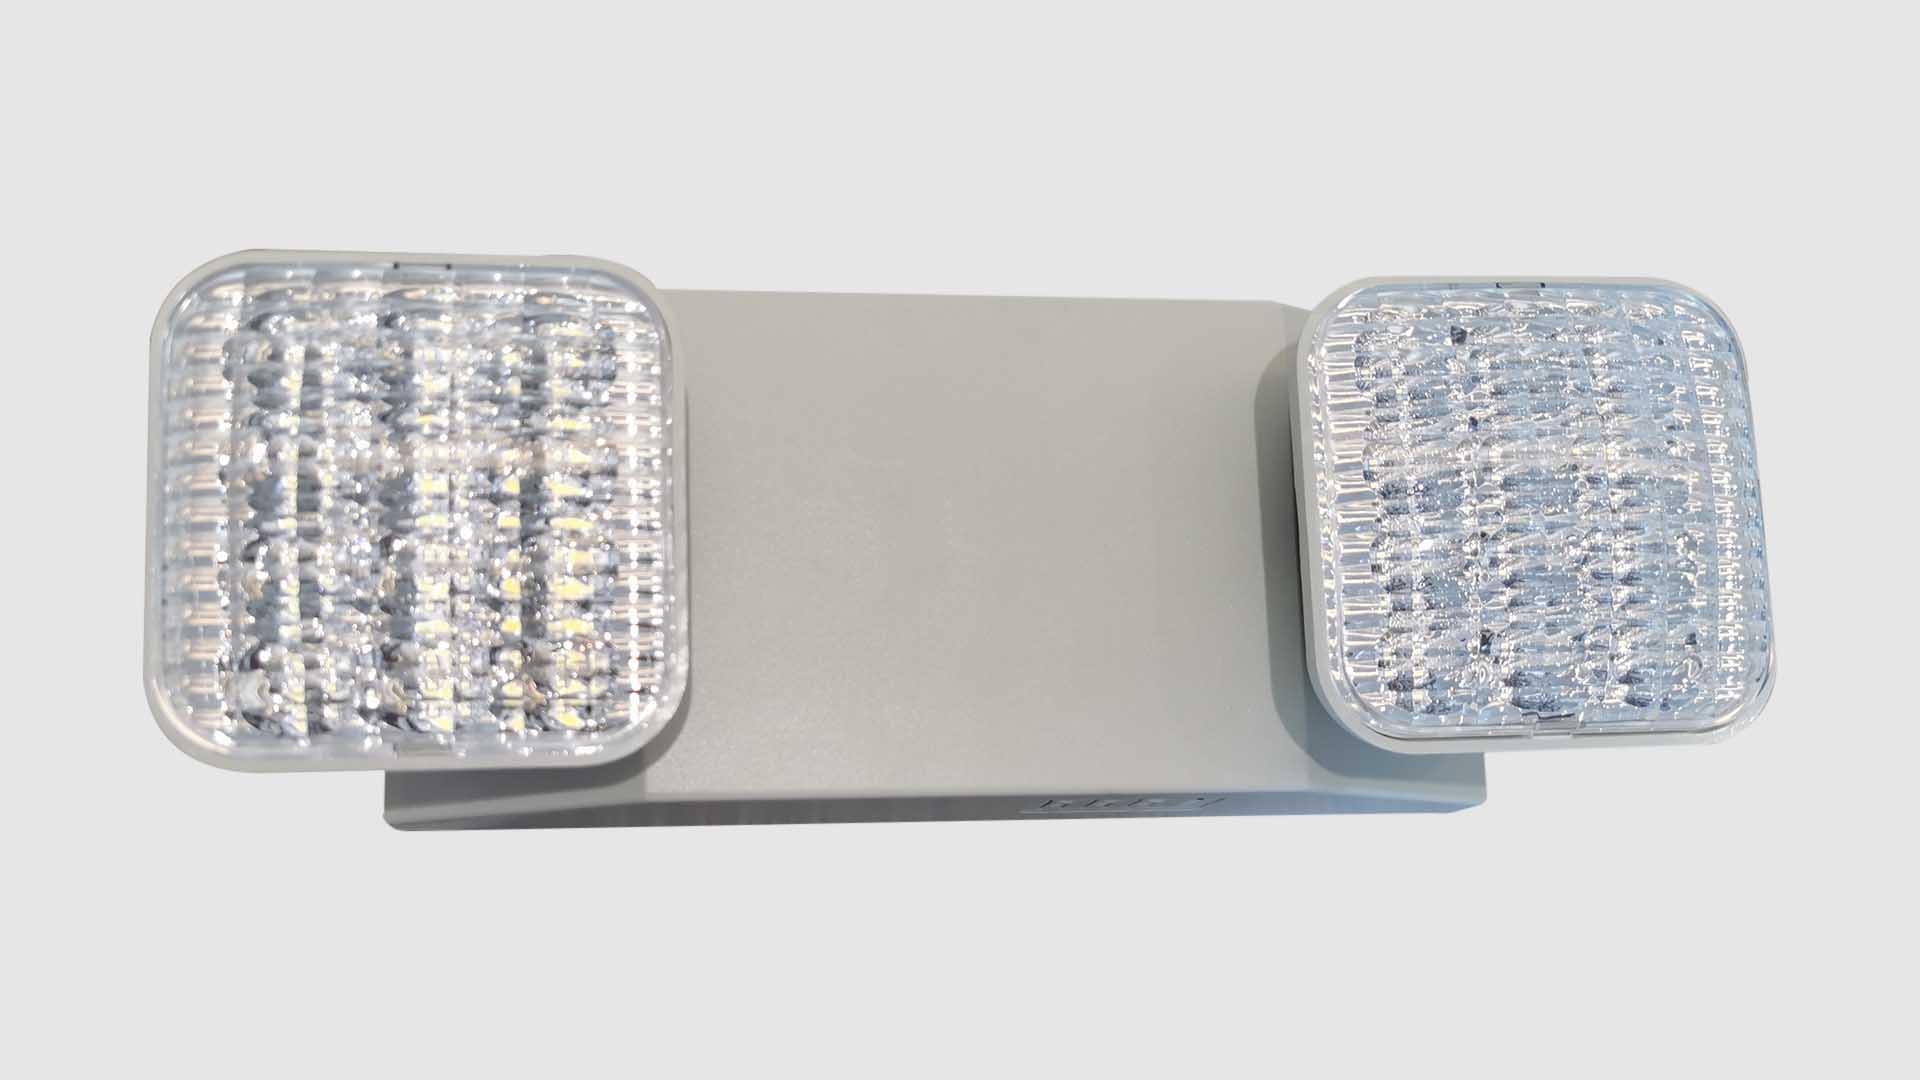 Dritë urgjence LED me dy koka SL-607 e markës ZFE - Prodhuar nga Guangdong Zhenhui Fire Technology